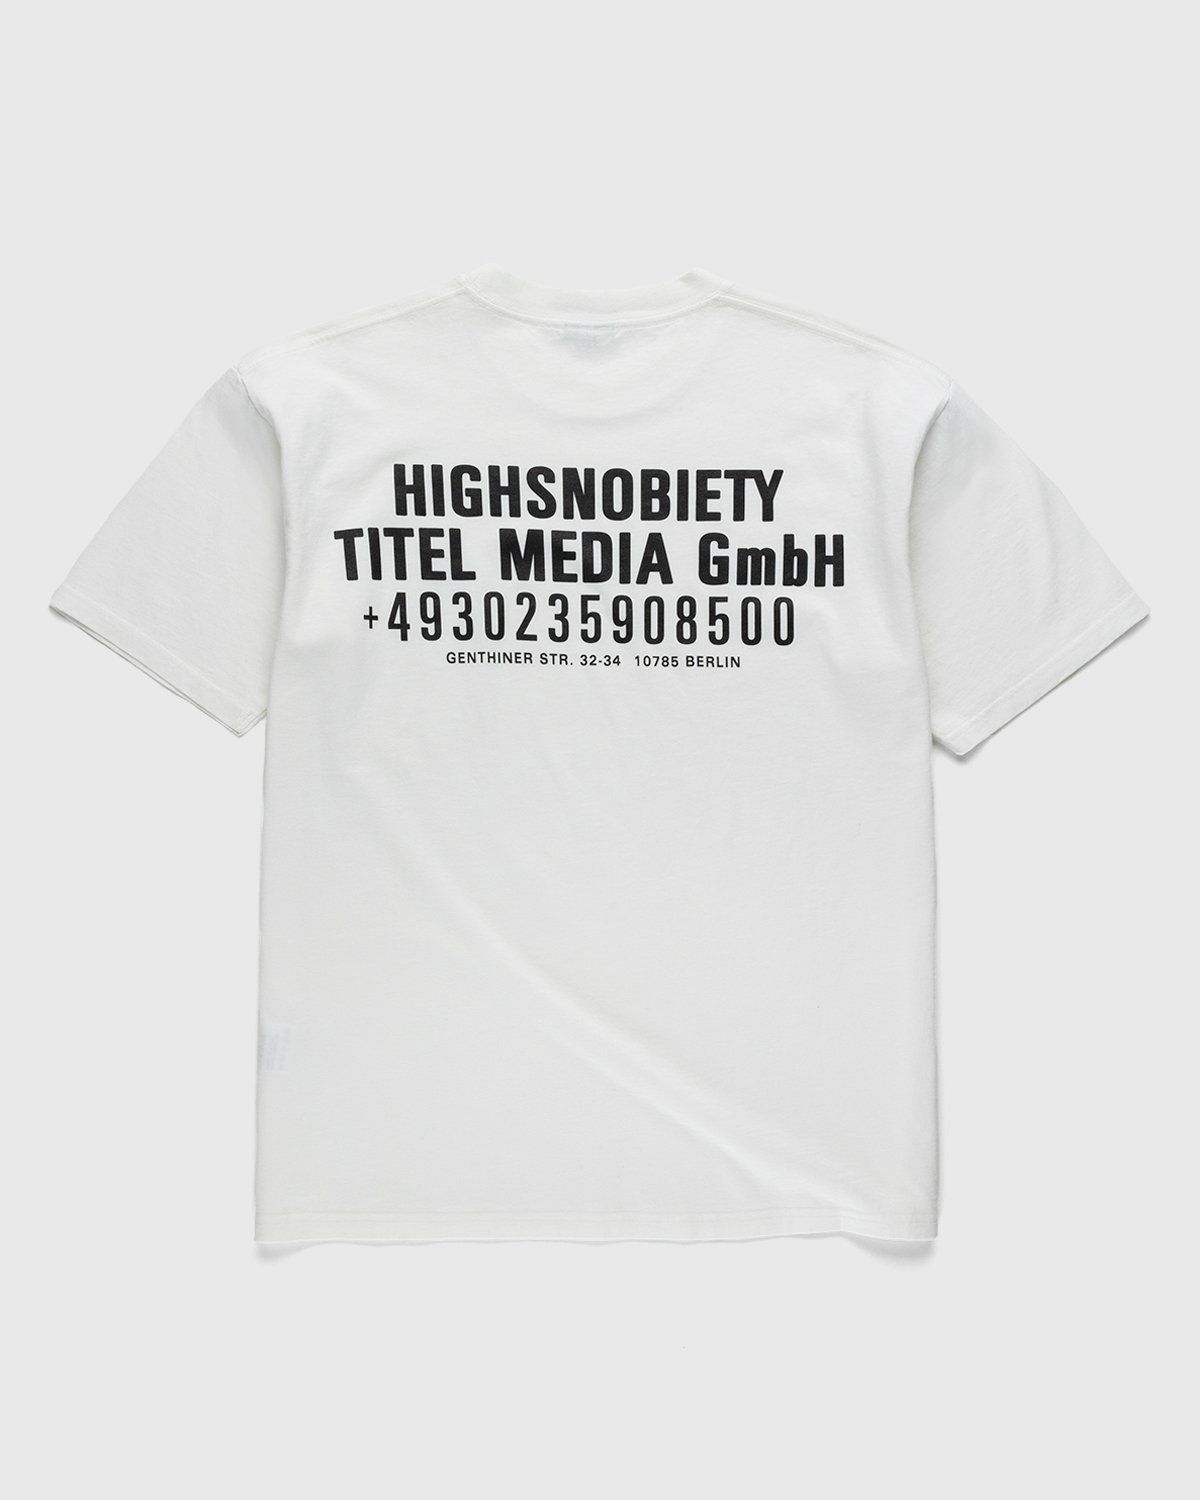 Highsnobiety – Titel Media GmbH T-Shirt White - Image 1